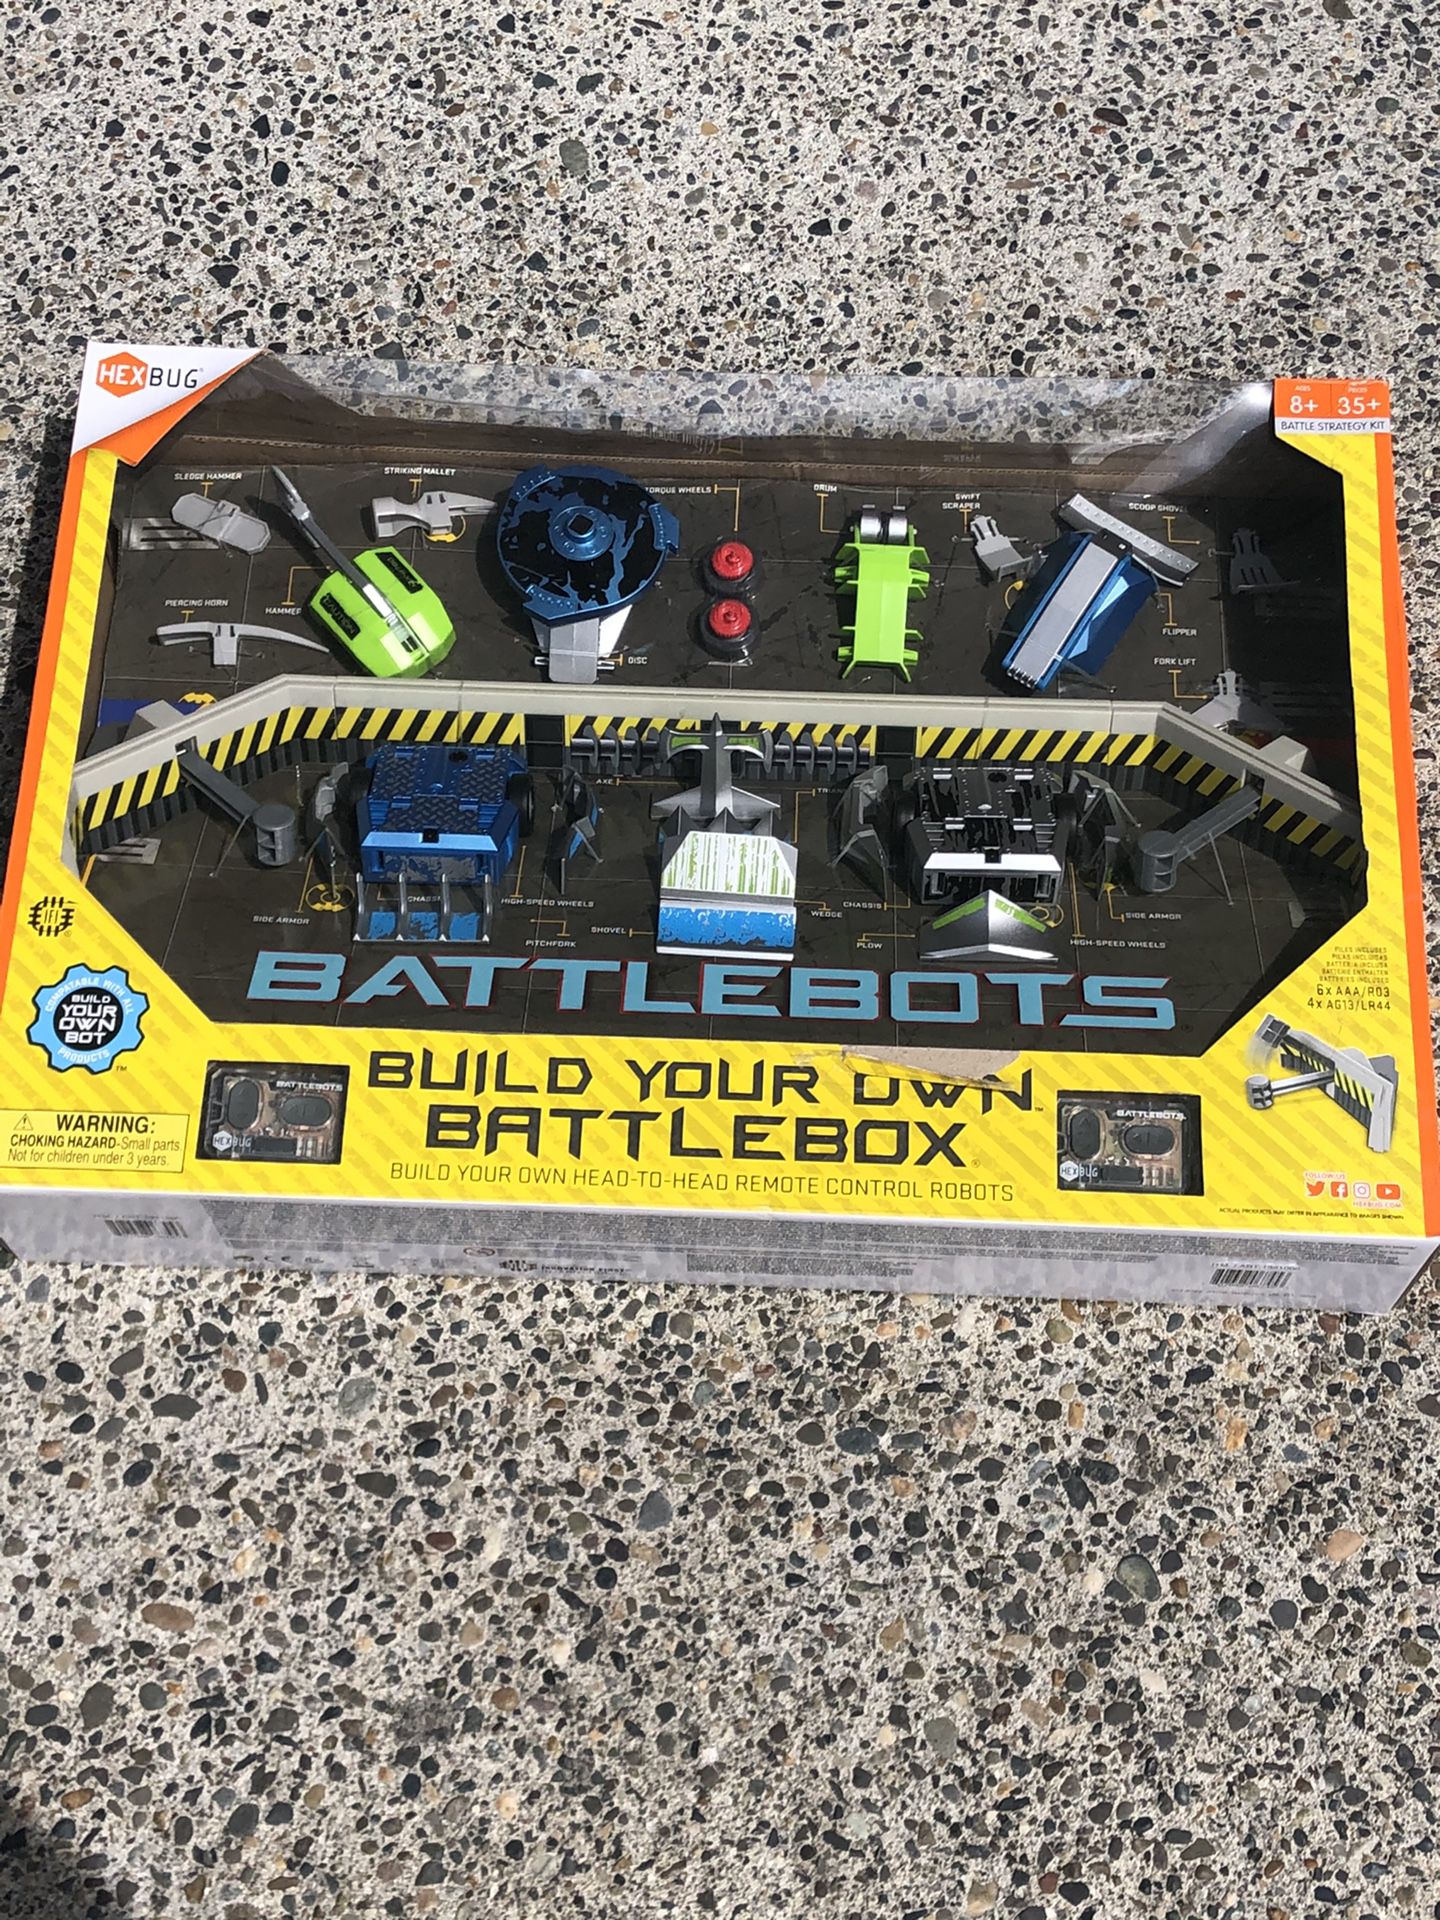 Battle bots